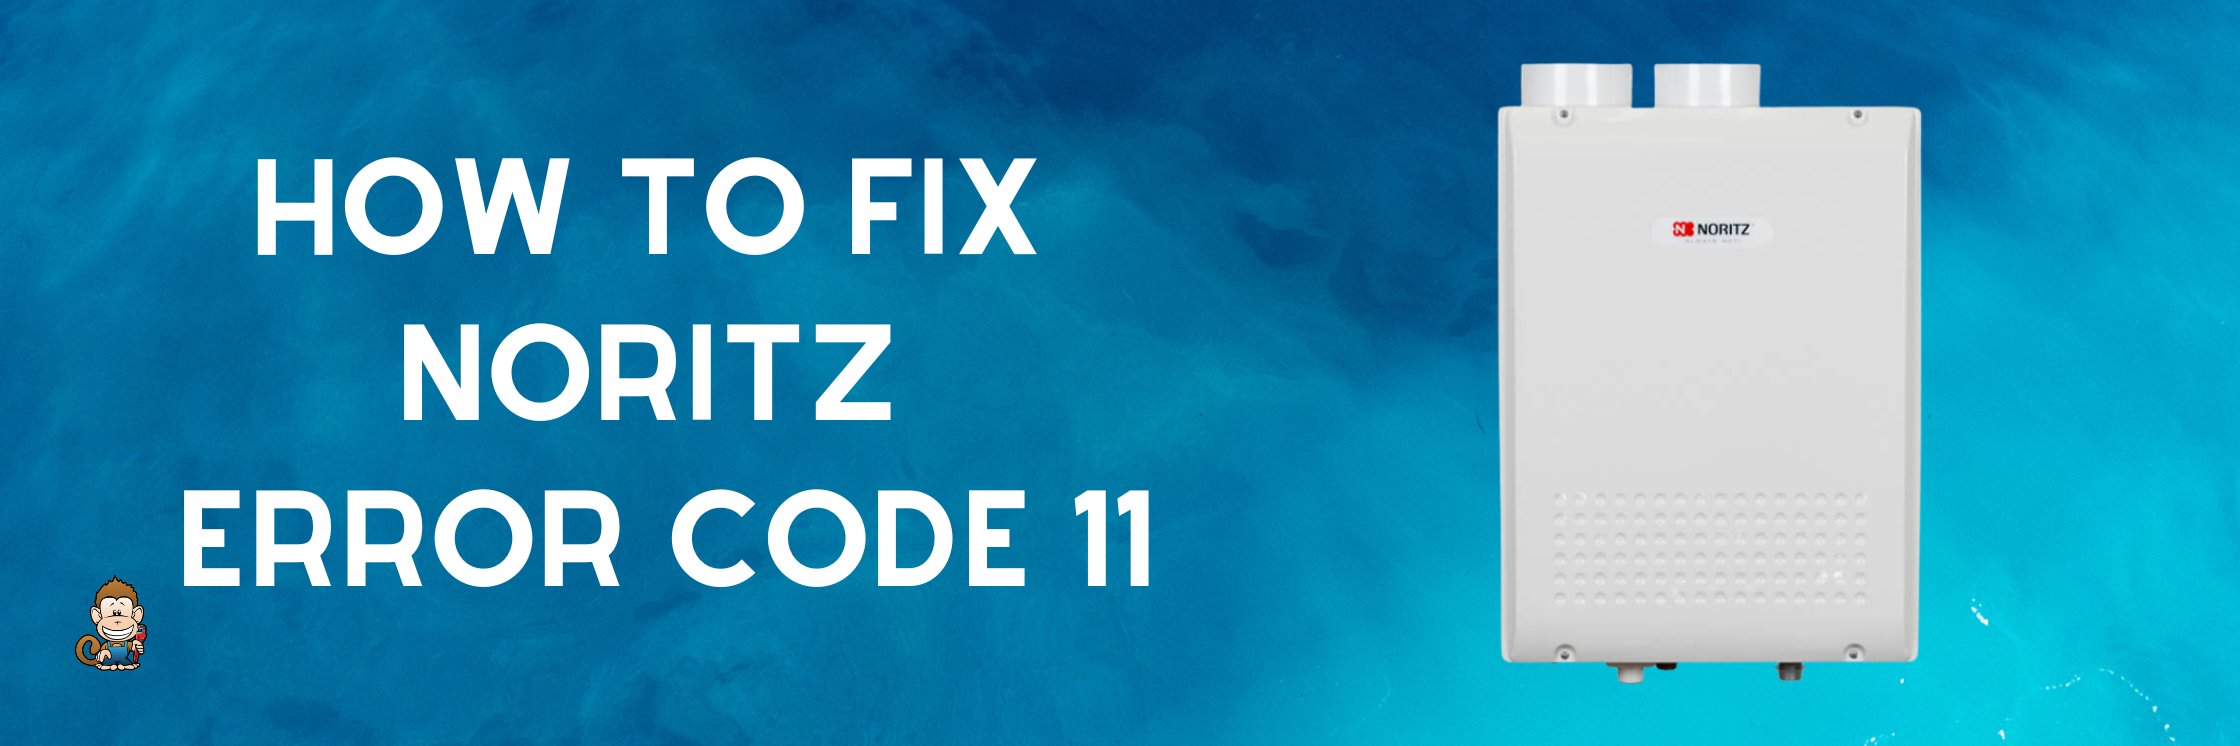 How to Fix Noritz Error Code 11